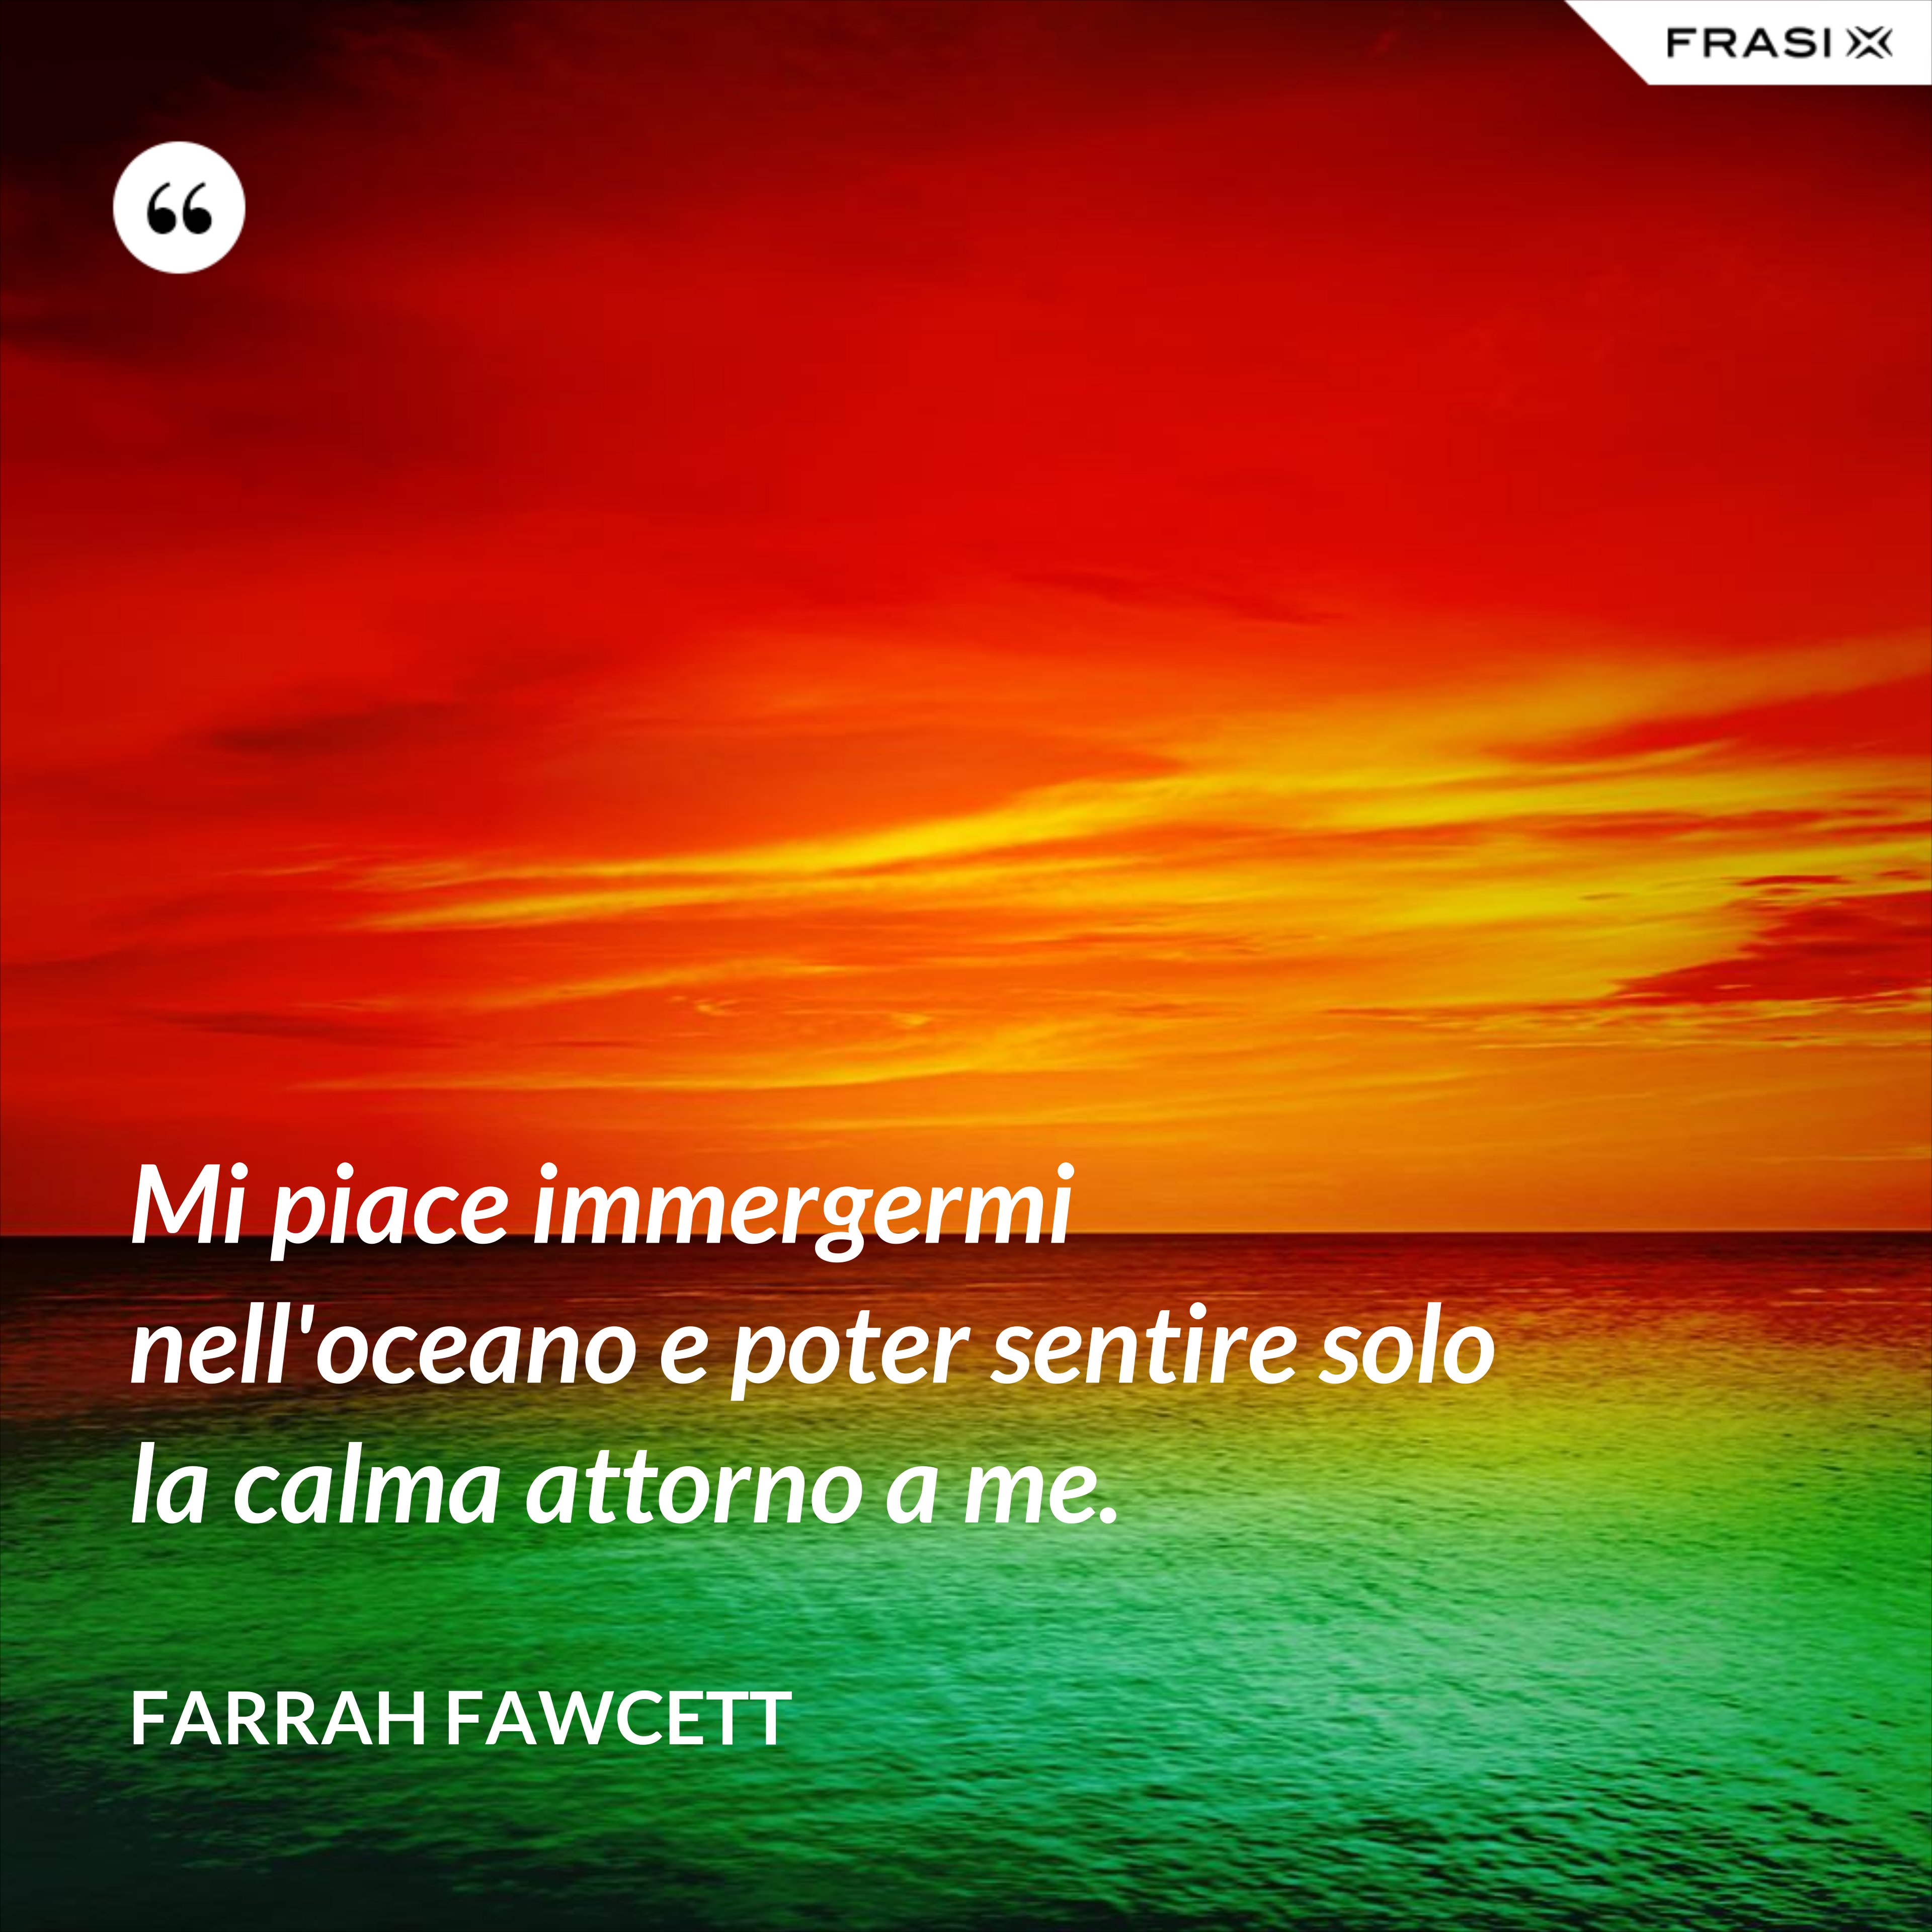 Mi piace immergermi nell'oceano e poter sentire solo la calma attorno a me. - Farrah Fawcett